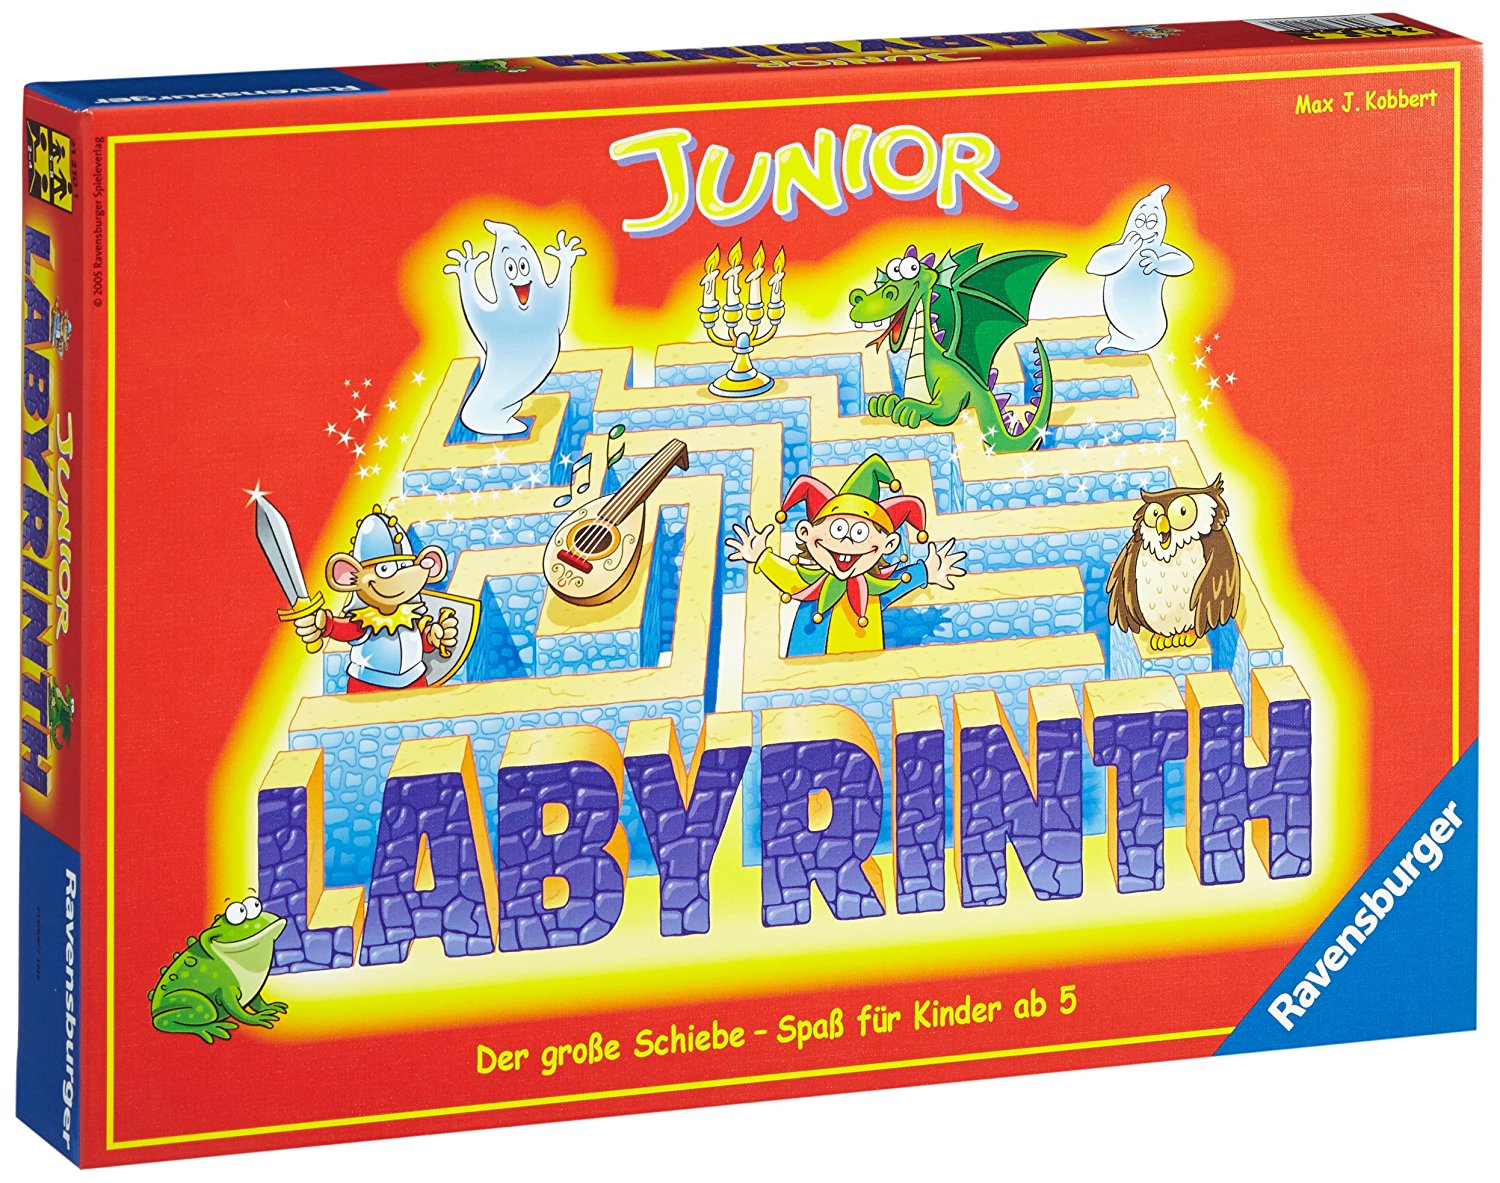 spiele für 5 jährige spielzeug für 5 jahre alte kinder junior labyrinth lernspiel